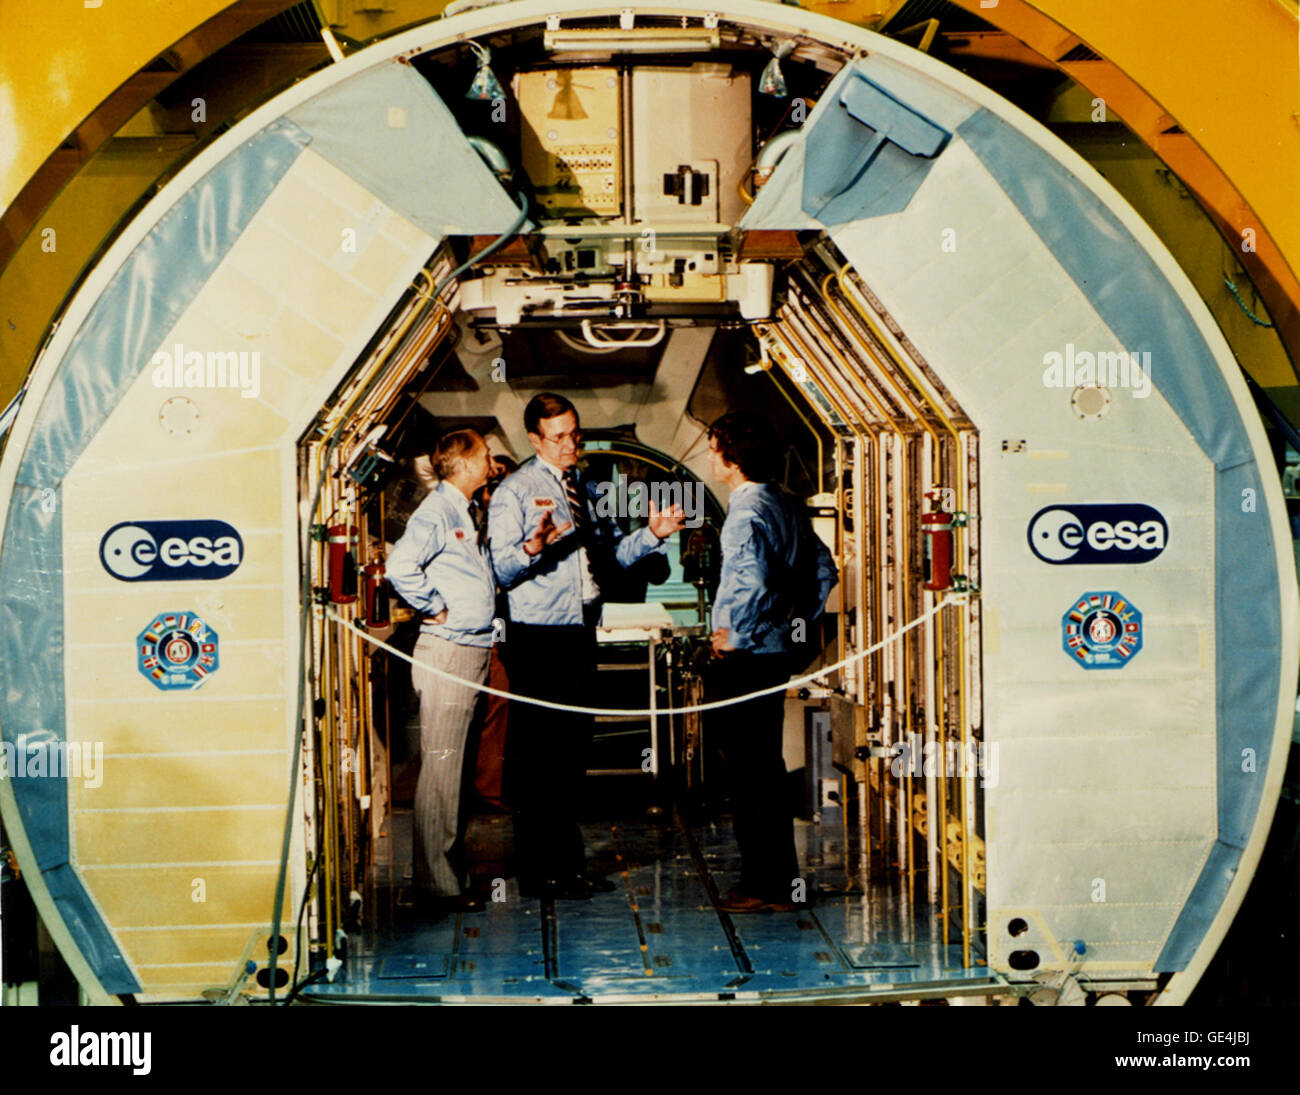 Aparecen en la foto de la izquierda son el astronauta Owen K. Garriott, Vice Presidente George Bush, y Ulf Merbold de Alemania Occidental, dentro del Spacelab, en las operaciones de retirada y el edificio en el Centro Espacial Kennedy. Este laboratorio orbital integrado europeo fue dedicada formalmente el 5 de febrero de 1982. Merbold fue uno de los especialistas de la carga en el primer vuelo STS-9 Spacelab, que lanzó el 28 de noviembre de 1983. El Spacelab fue un laboratorio reutilizable que permitió a los científicos realizar diversos experimentos en microgravedad mientras orbitando alrededor de la tierra. Diseñado por la Agencia Espacial Europea (ESA) y montado en el Transbordador Espacial de la NASA Foto de stock